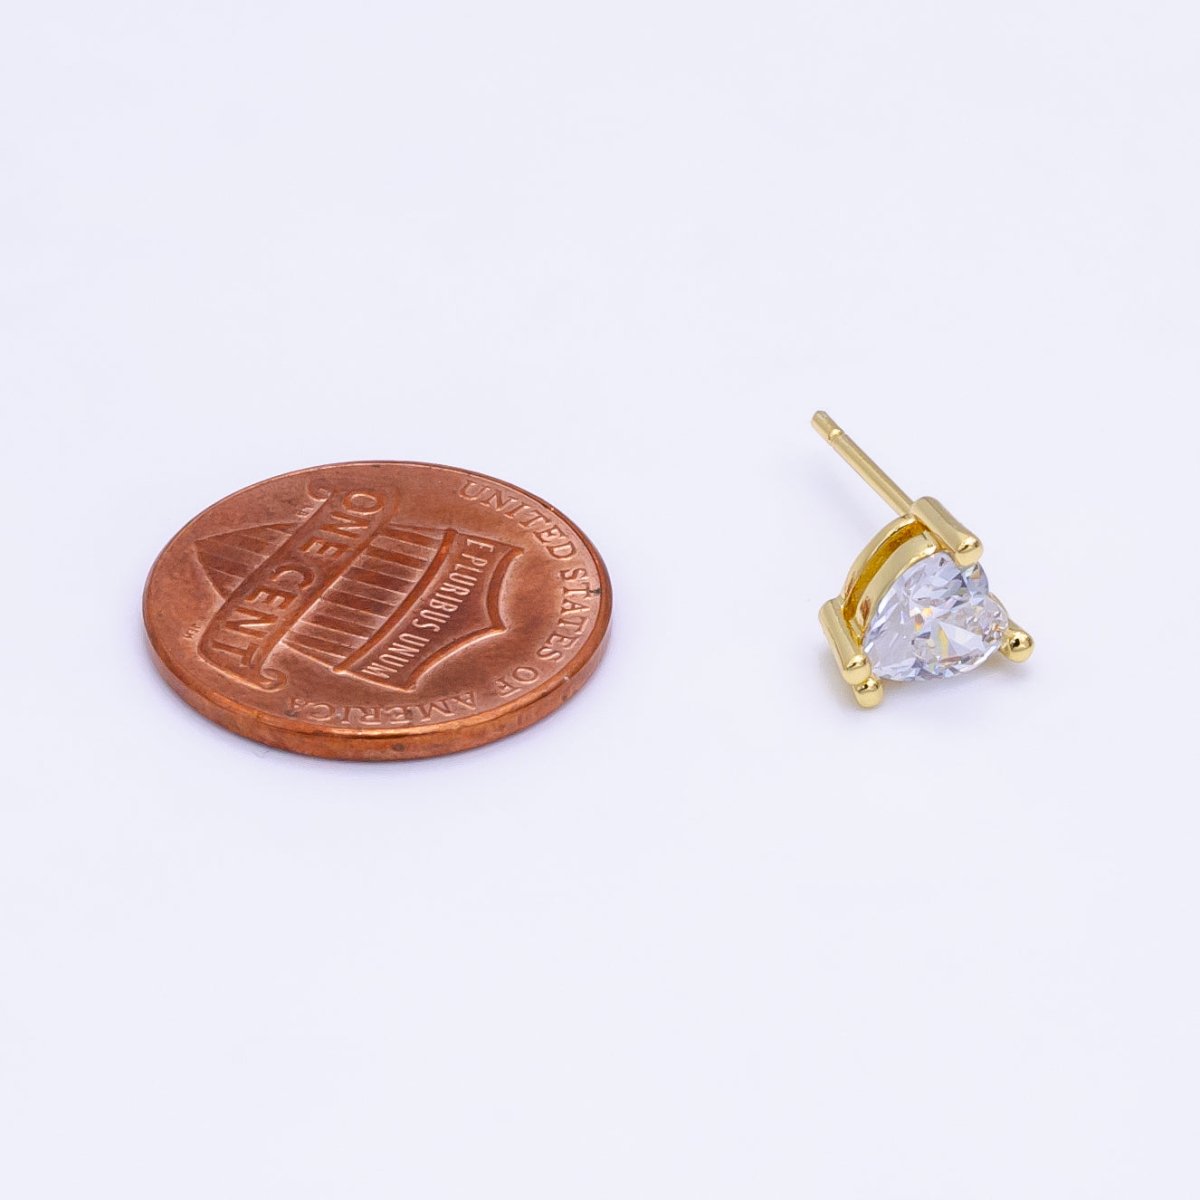 14K Gold Filled 6.5mm, 9mm Clear CZ Heart Bezel Stud Earrings | AE599 AE762 - DLUXCA